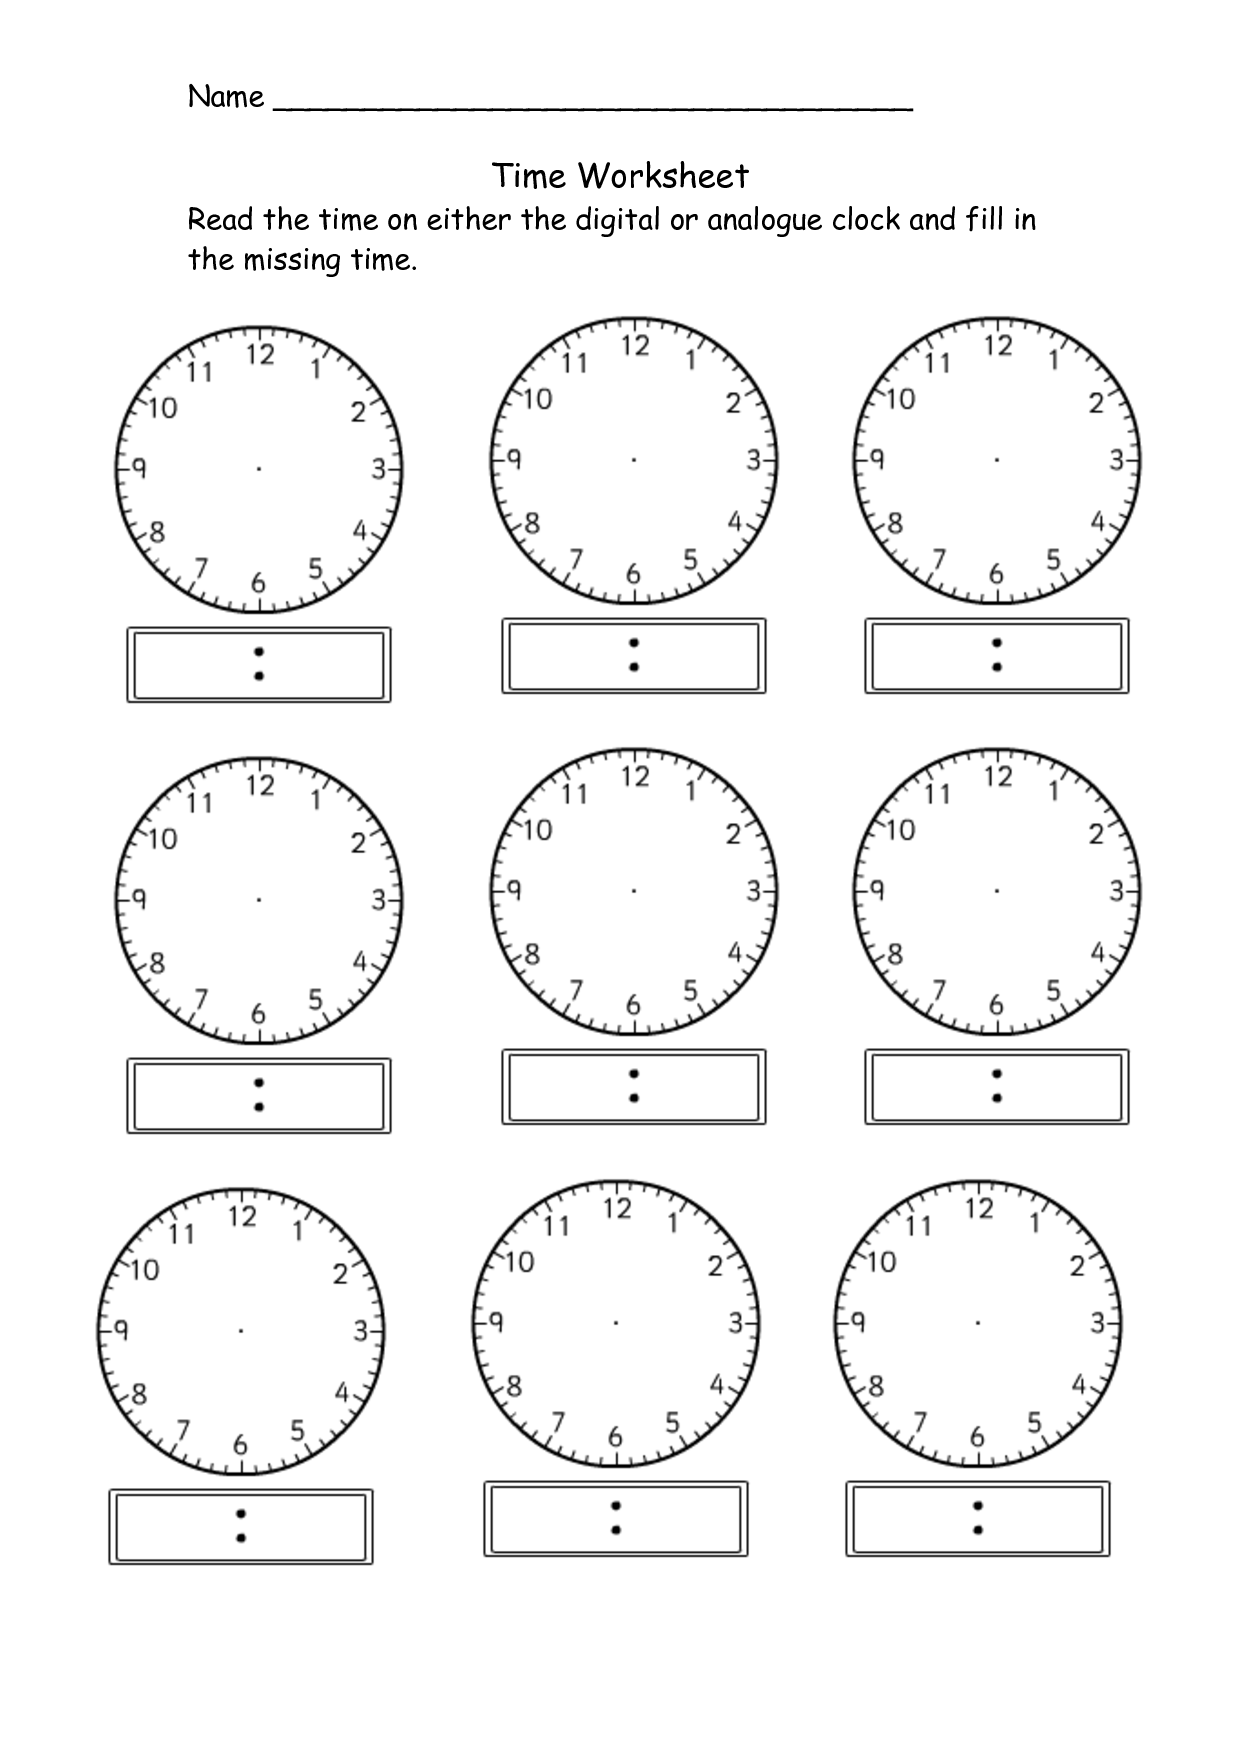 free-blank-analog-clock-download-free-blank-analog-clock-png-images